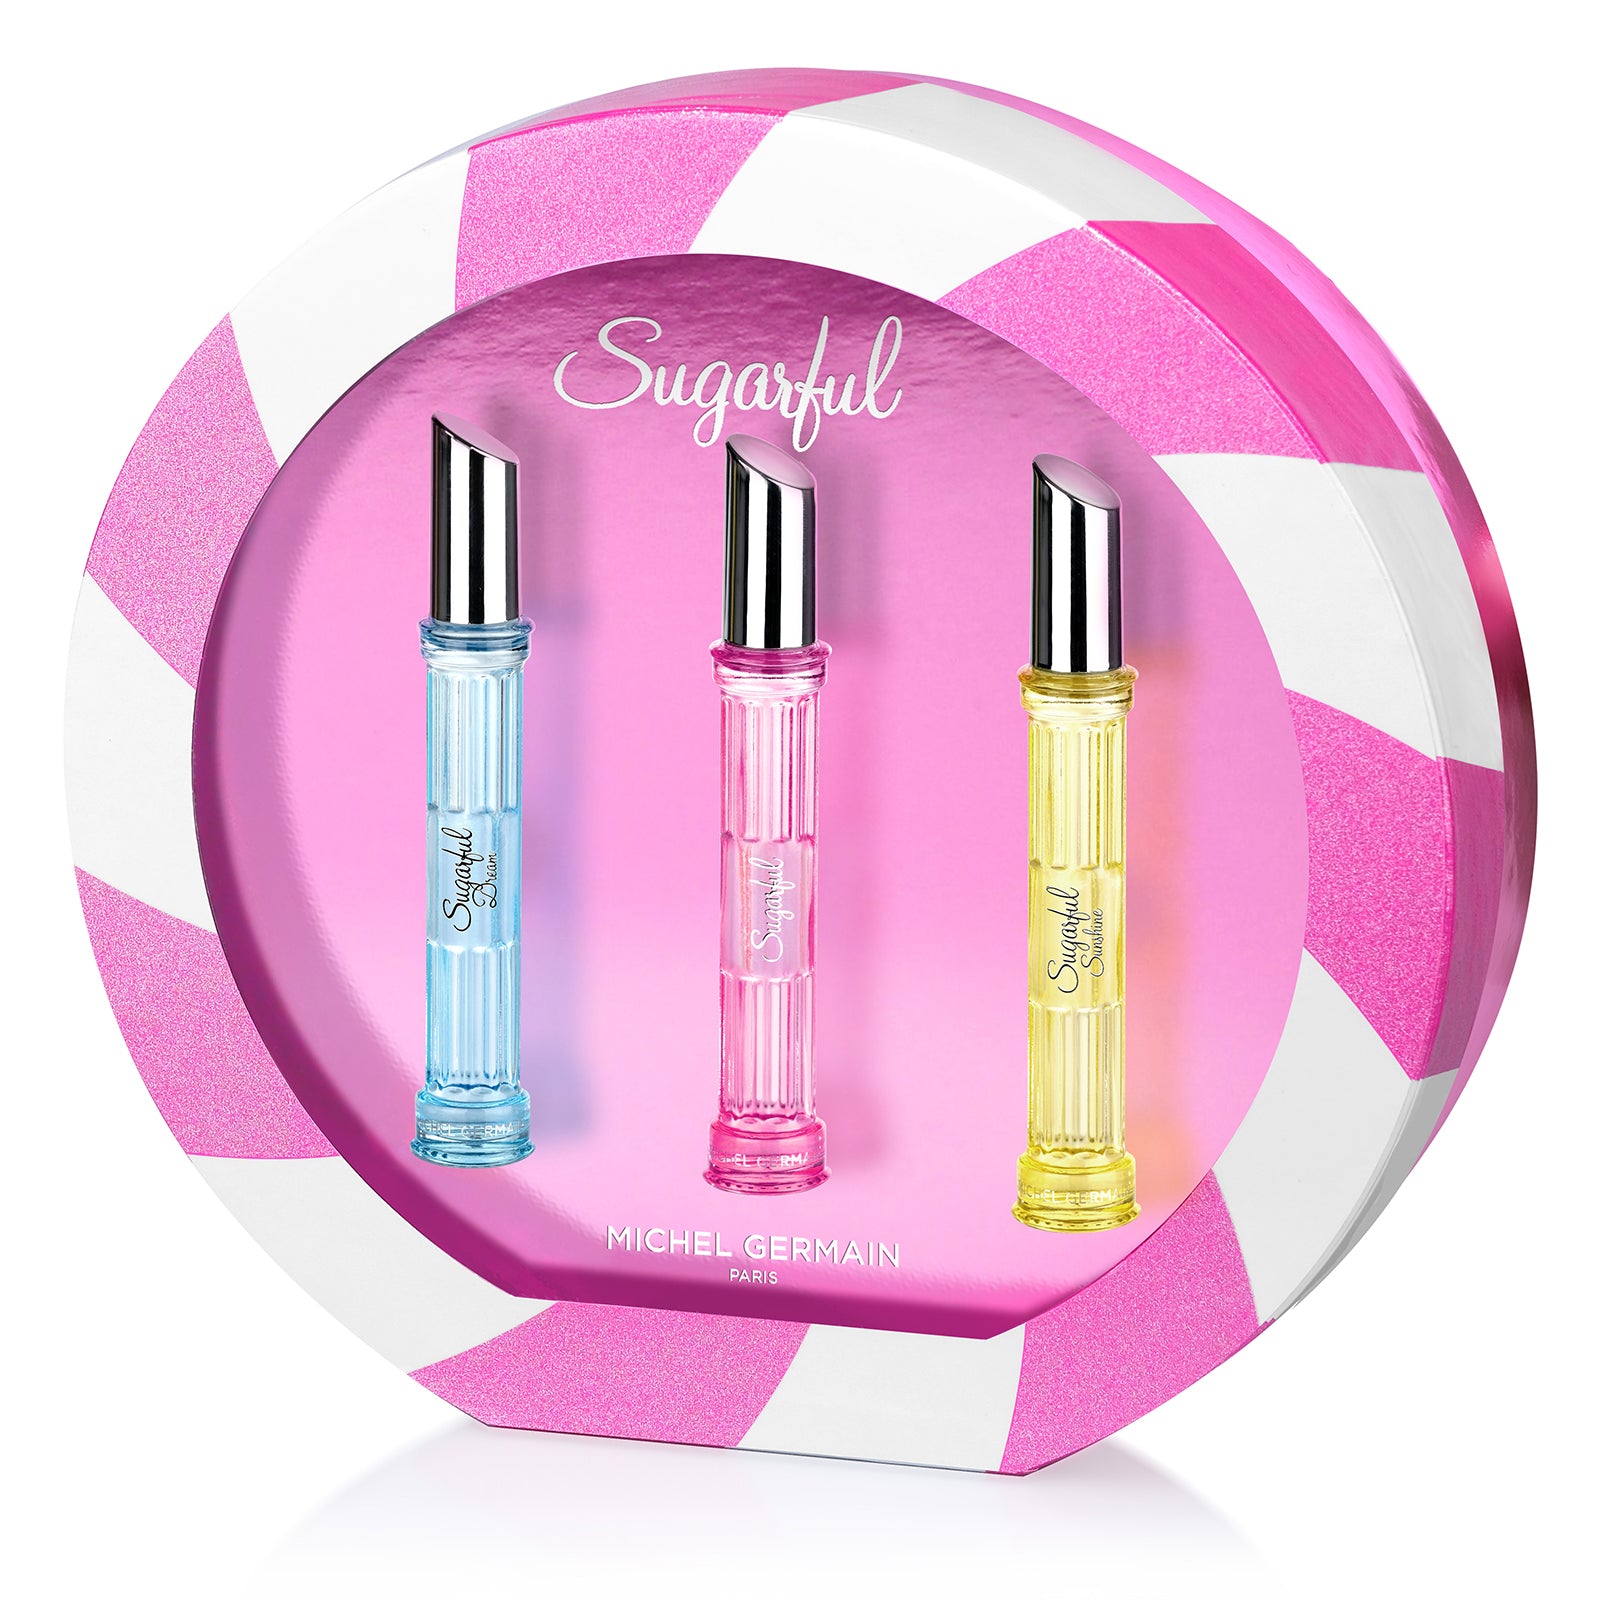 chanel perfume sample set for women